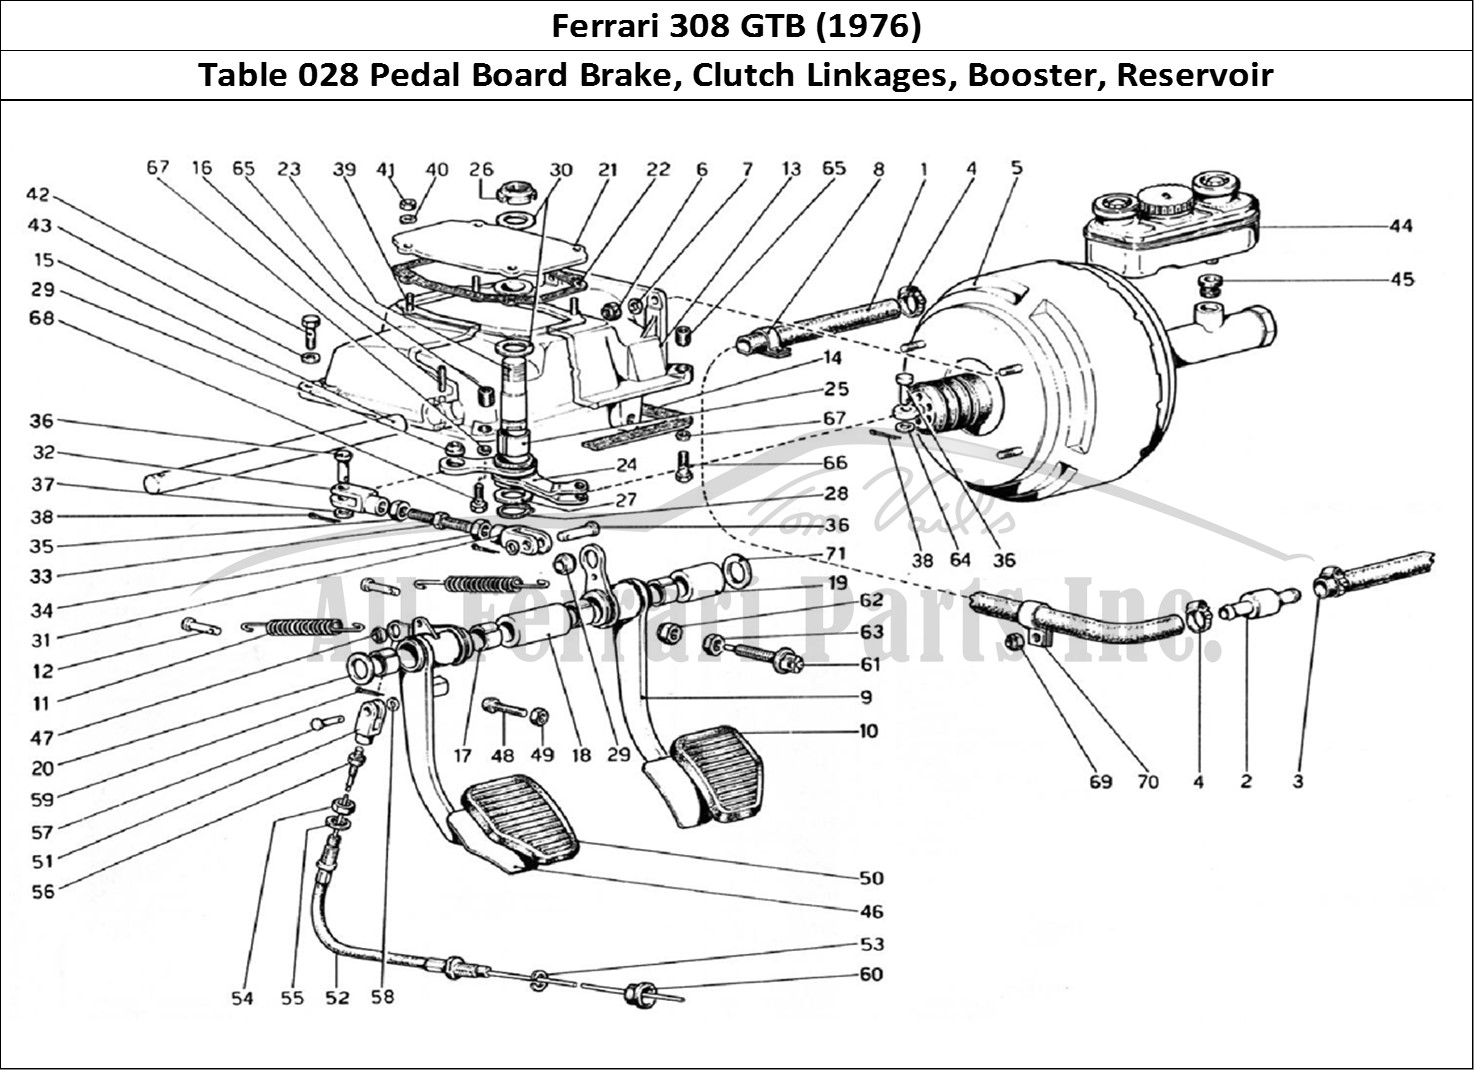 Ferrari Parts Ferrari 308 GTB (1976) Page 028 Pedal Board -Brake and Cl